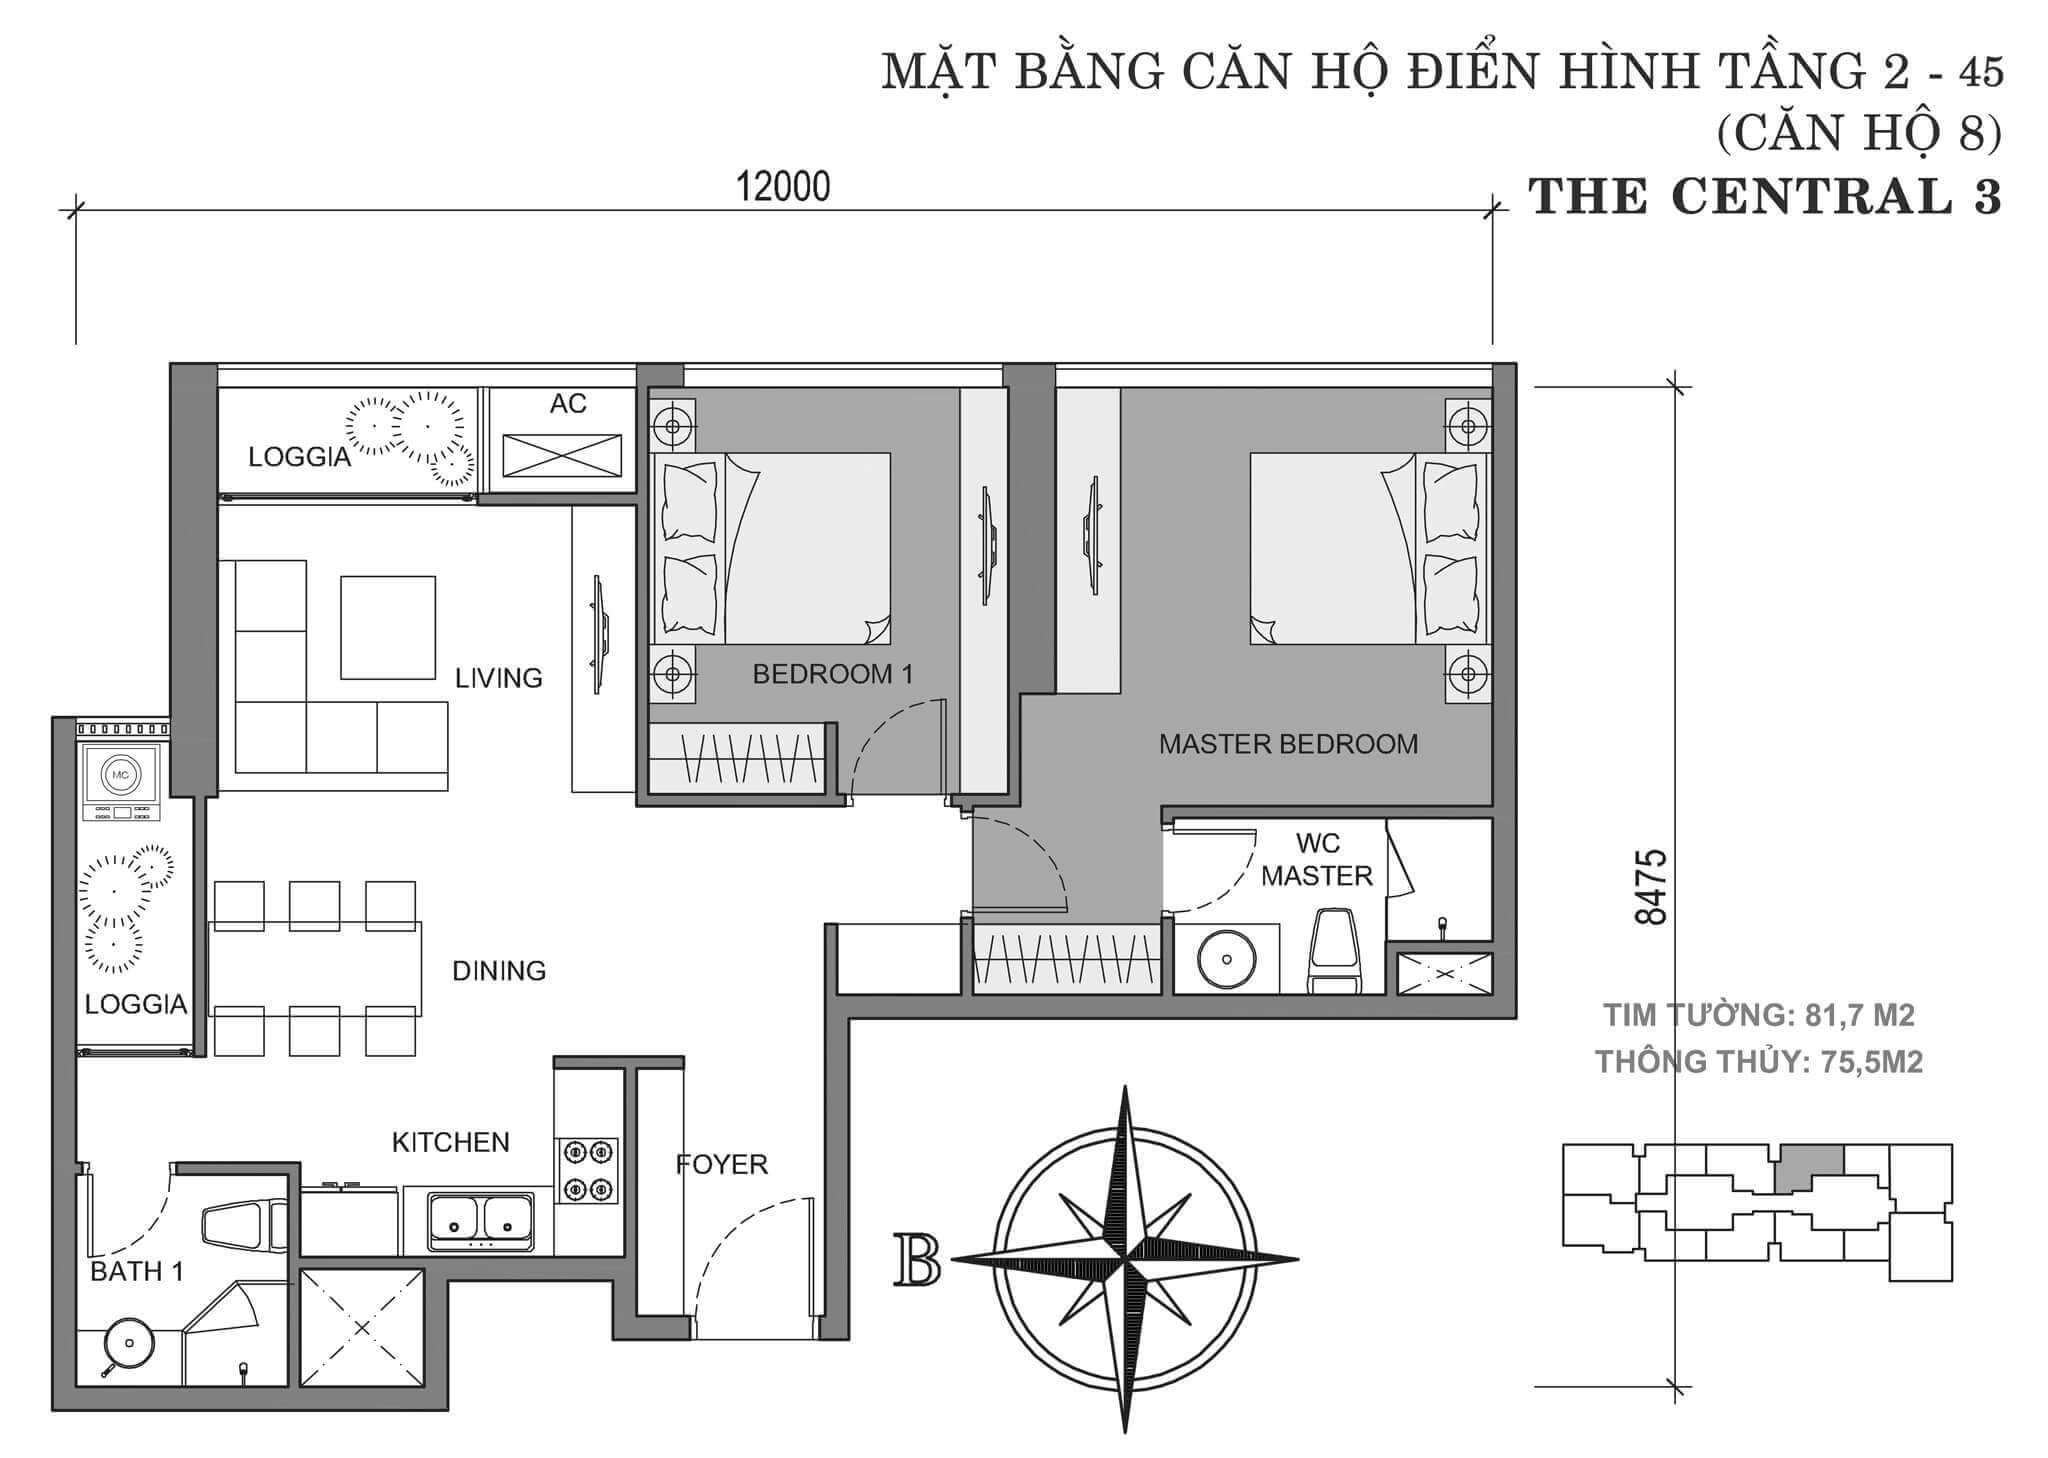 layout căn hộ số 8 tòa Central 3 tầng 2-45  